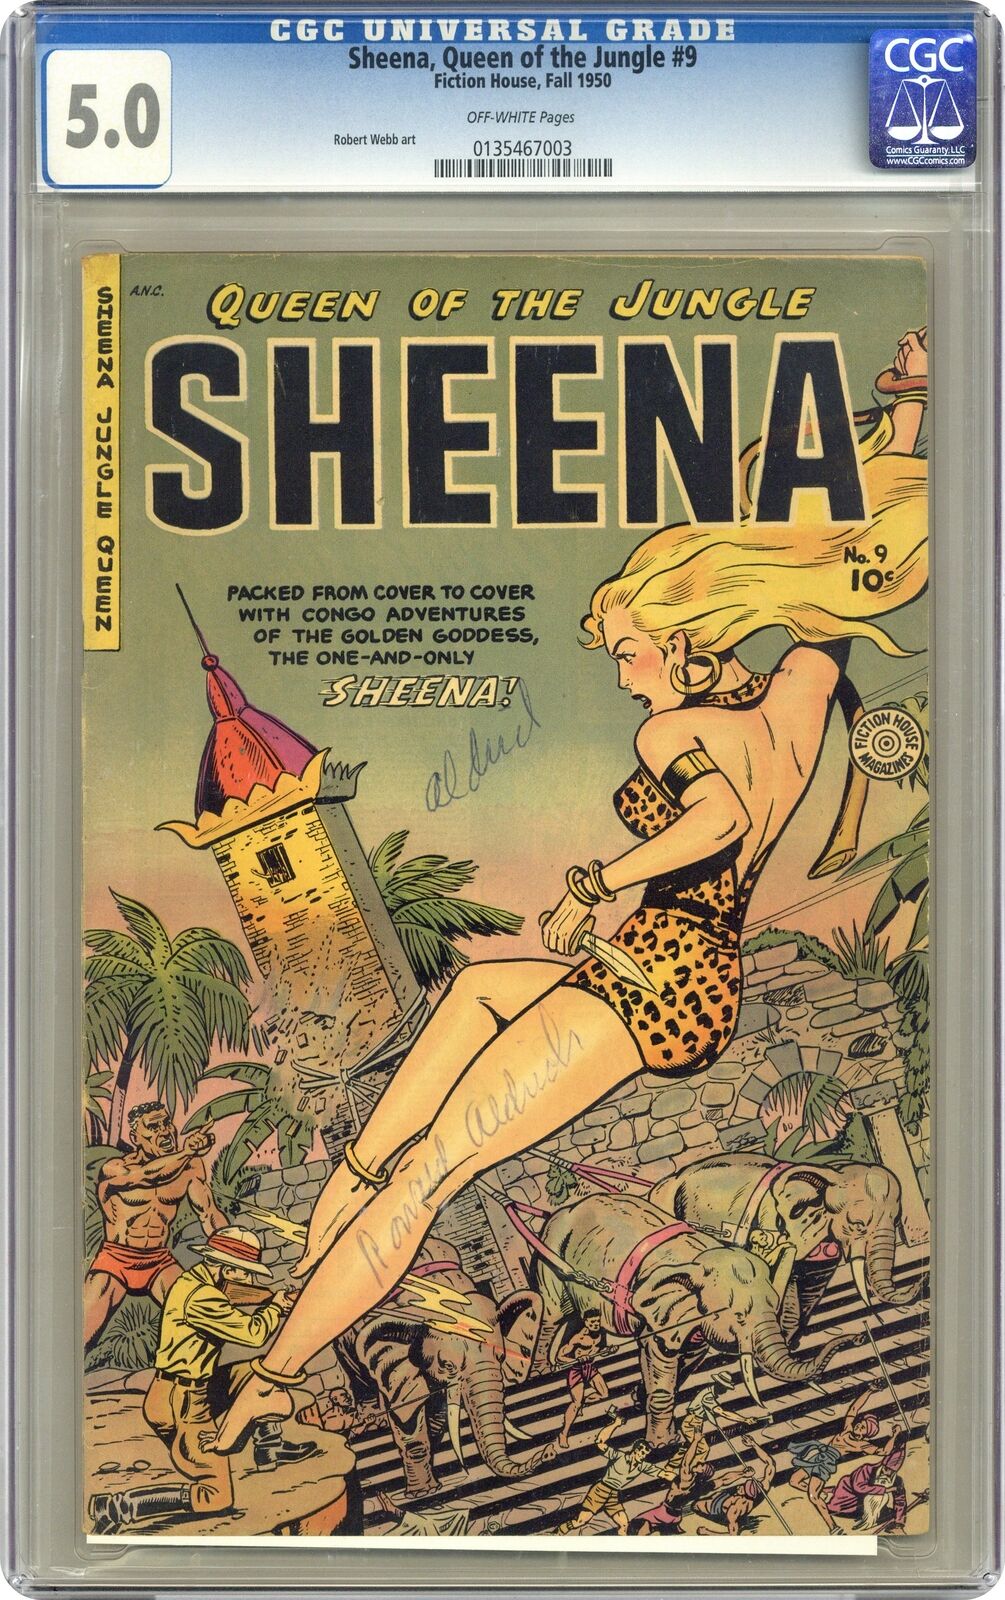 Sheena Queen of the Jungle #9 CGC 5.0 1950 0135467003